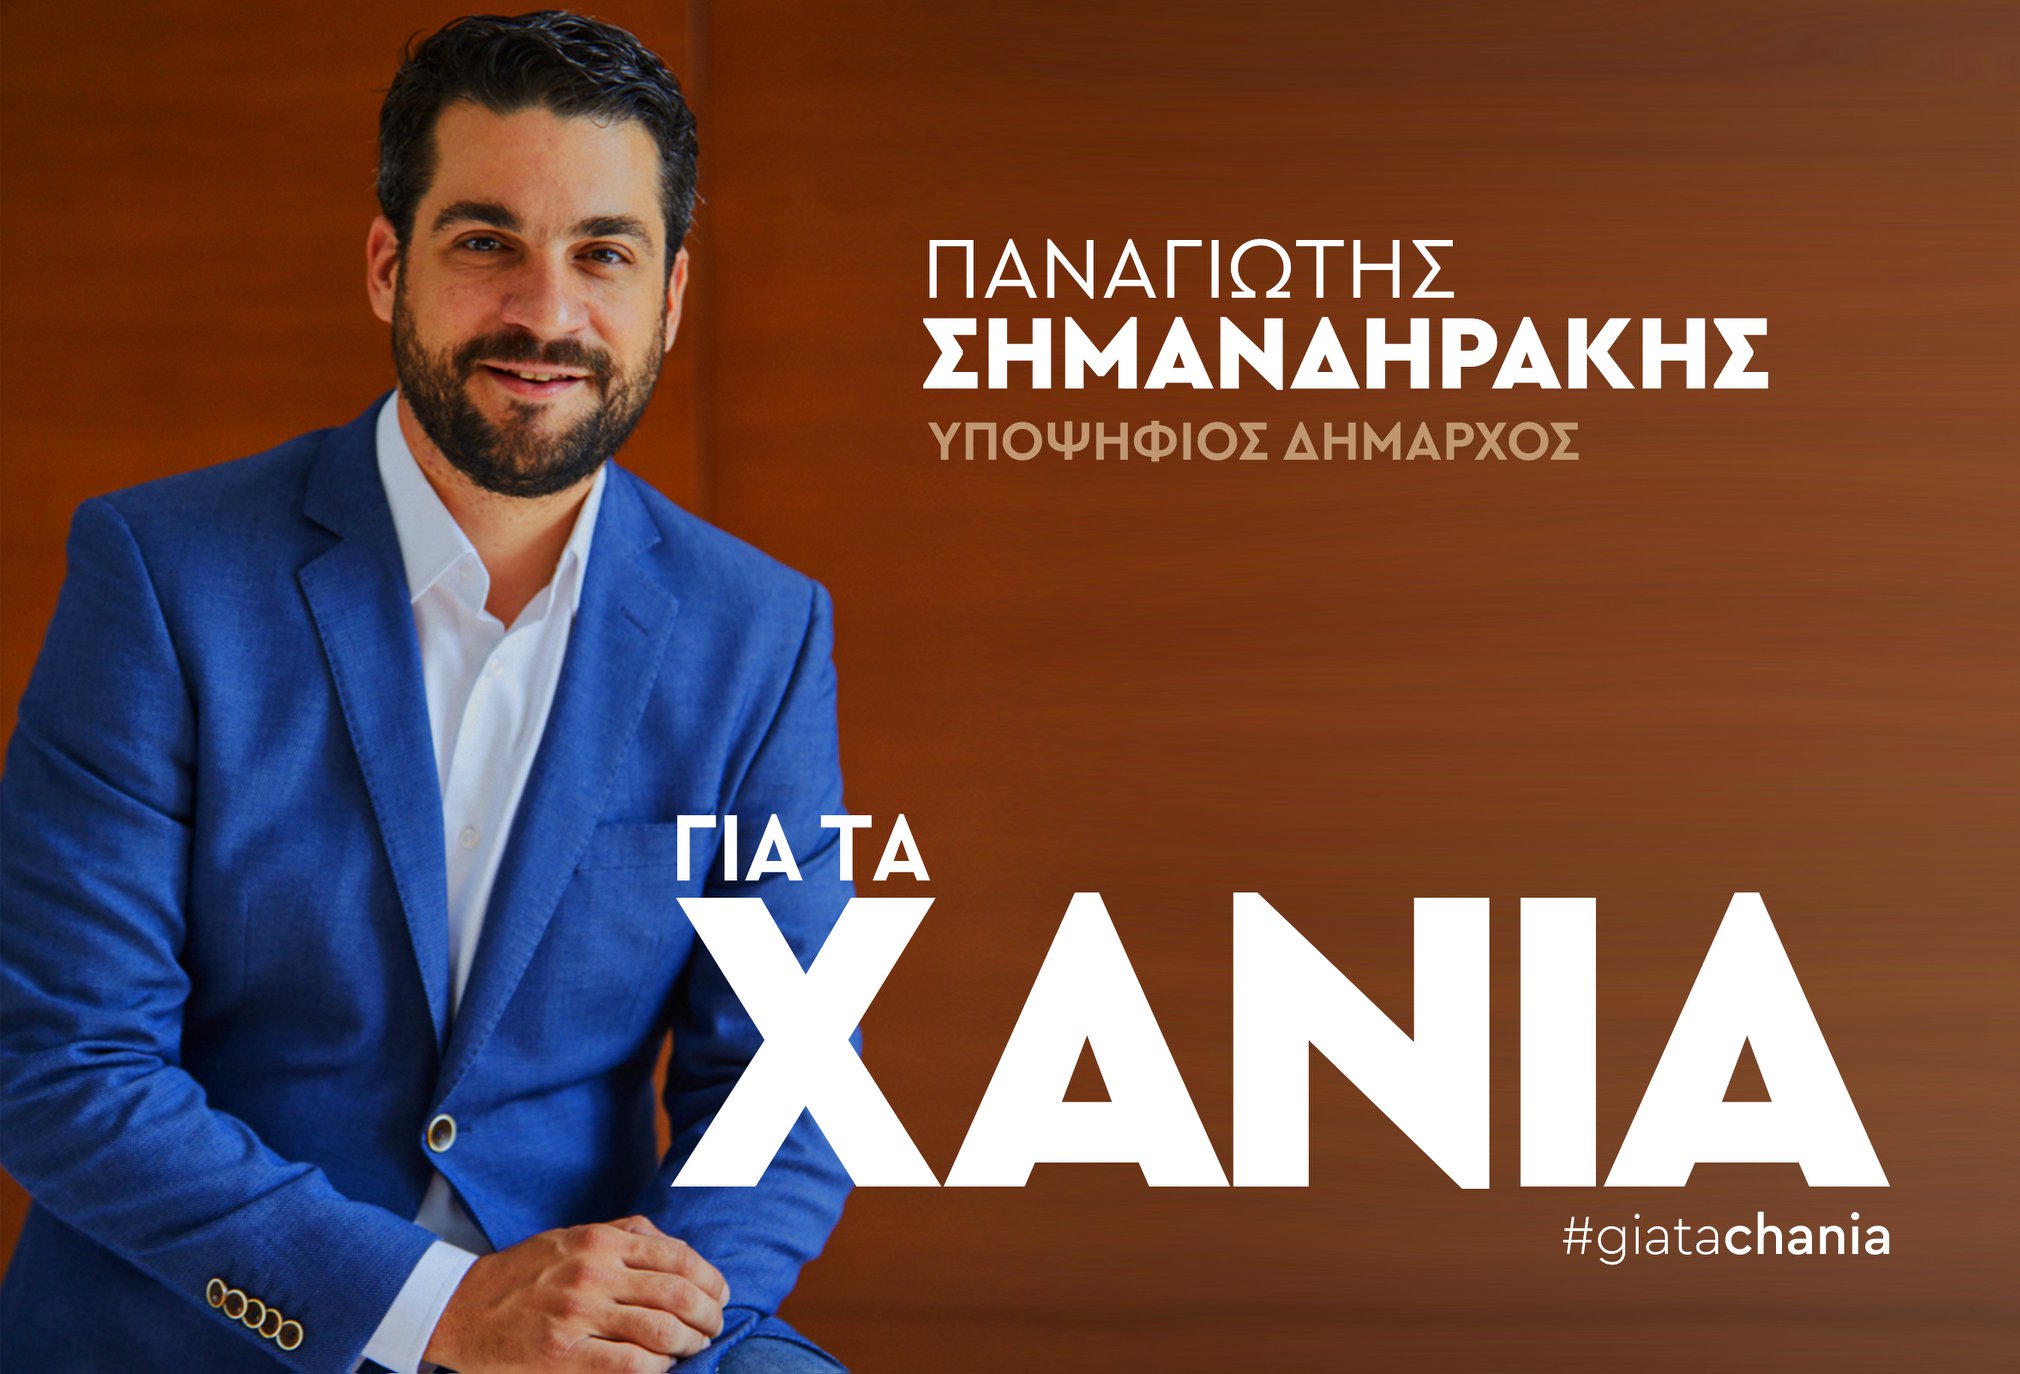 Ο Παναγιώτης Σημανδηράκης ανακοίνωσε την υποψηφιότητα του